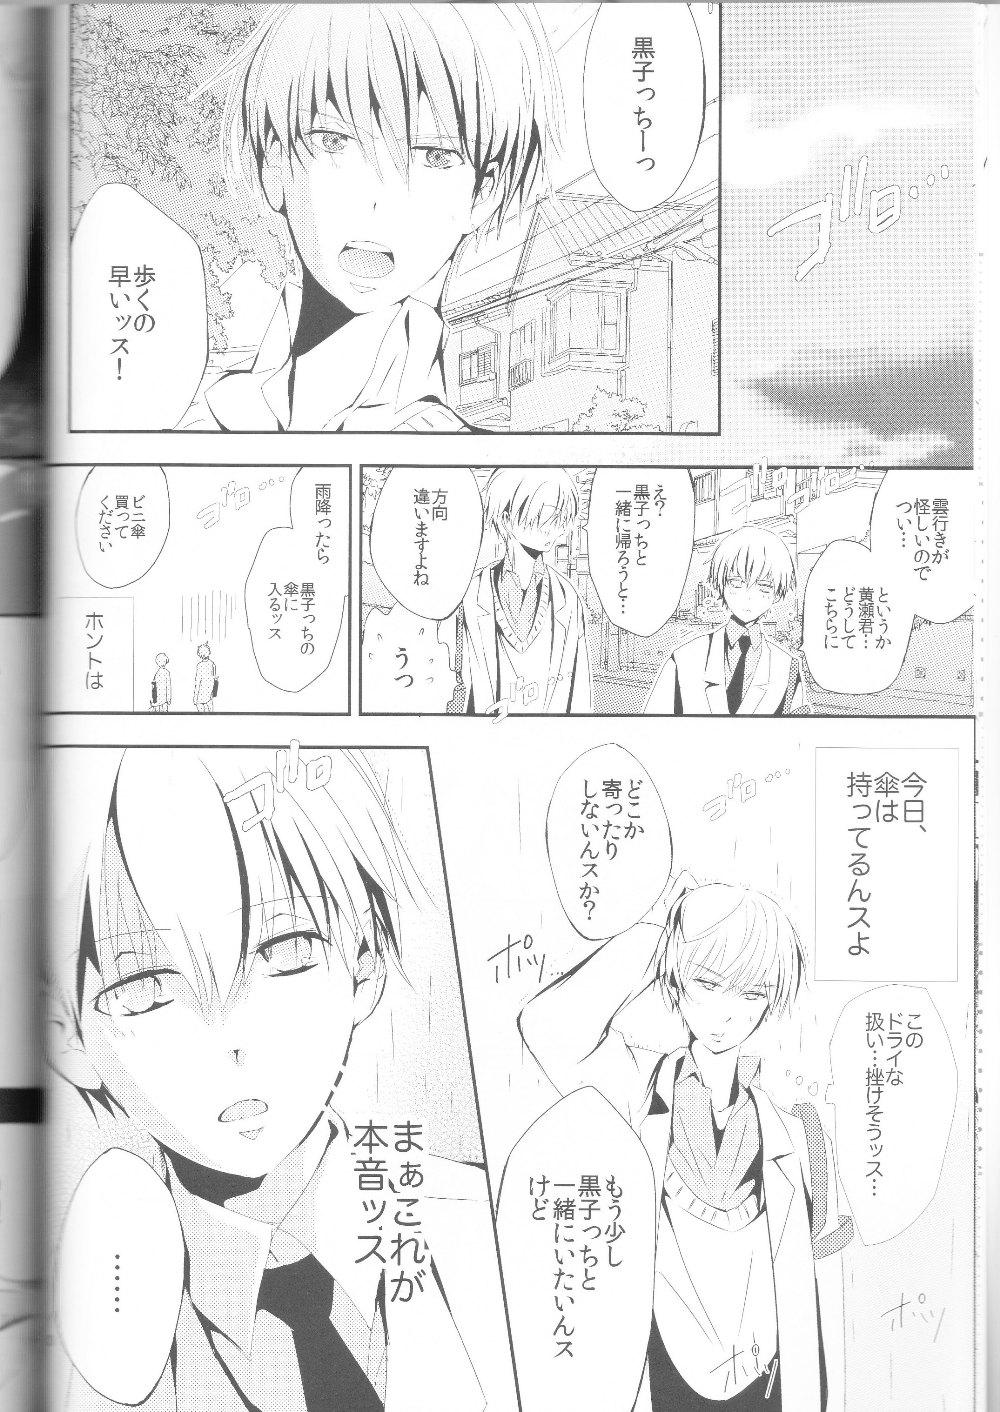 Fat Kisekise × Kuroko 3P - Kuroko no basuke Amateur Blowjob - Page 11